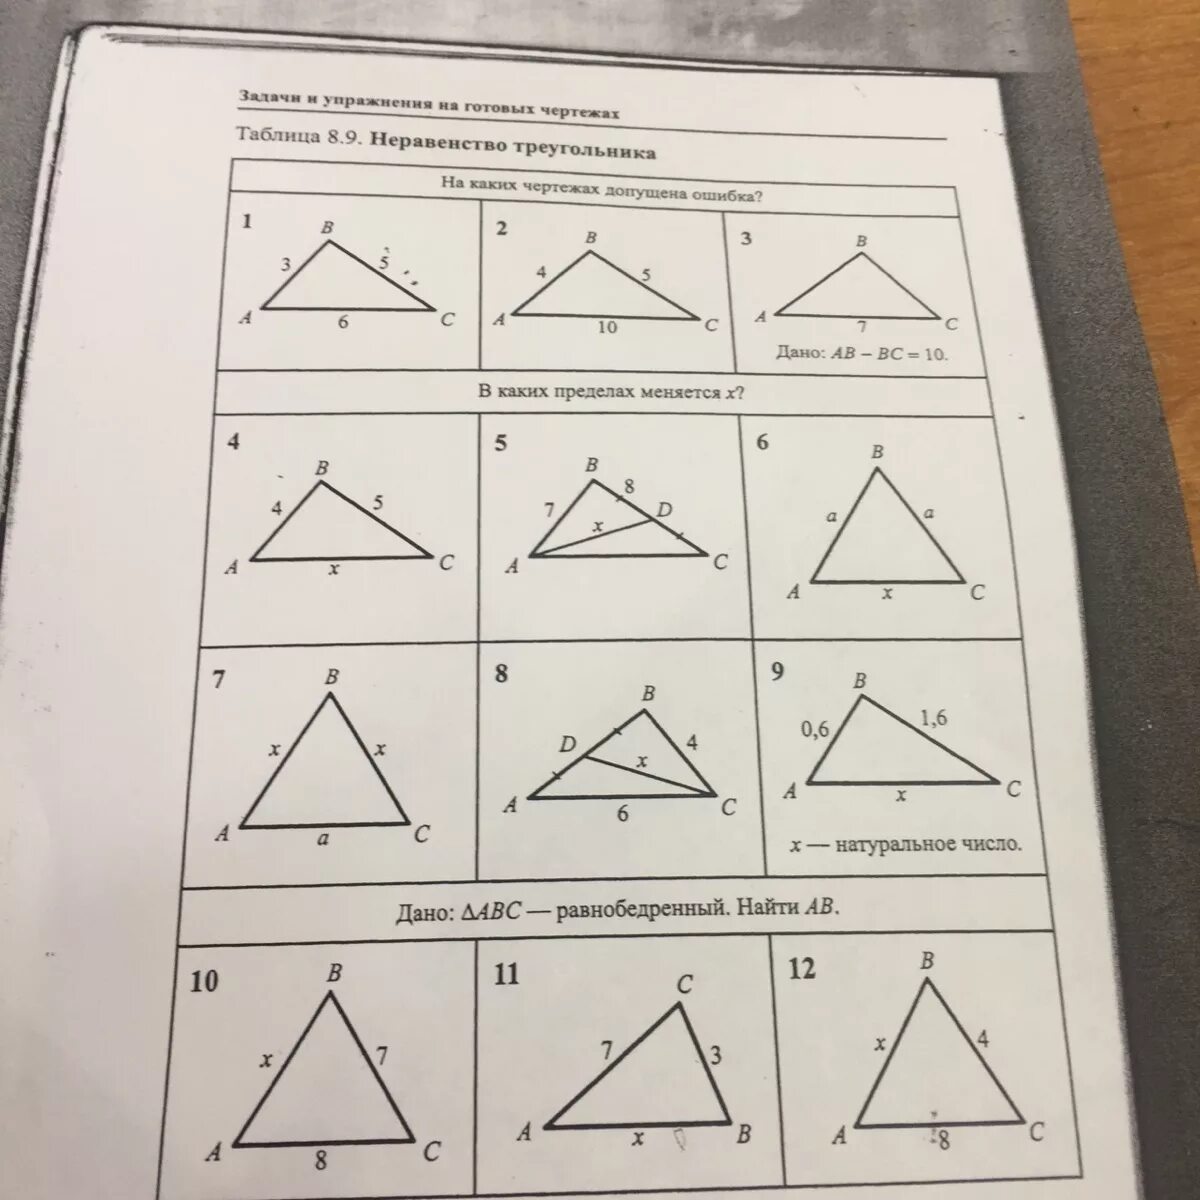 Самостоятельная работа по геометрии неравенство треугольников. Неравенство треугольника задачи на готовых чертежах. Неравенство треугольника задачи. Неравенство треугольника на готовых чертежах. Задачи и упражнения на готовых чертежах.